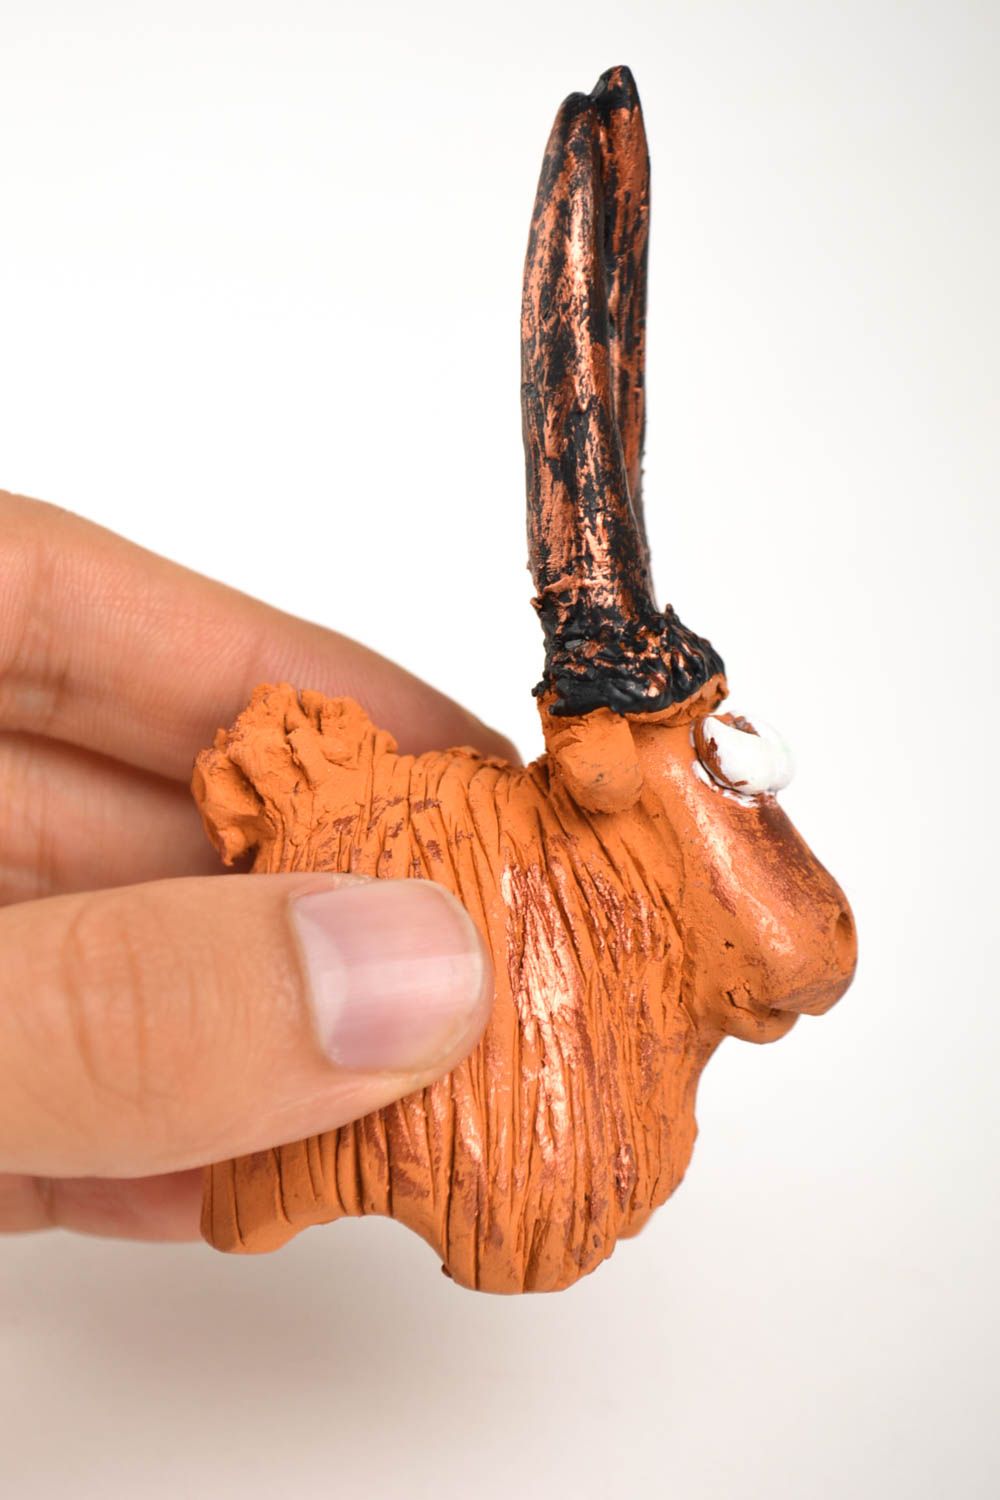 Статуэтка ручной работы глиняная статуэтка фигурка животного расписная Коза фото 2